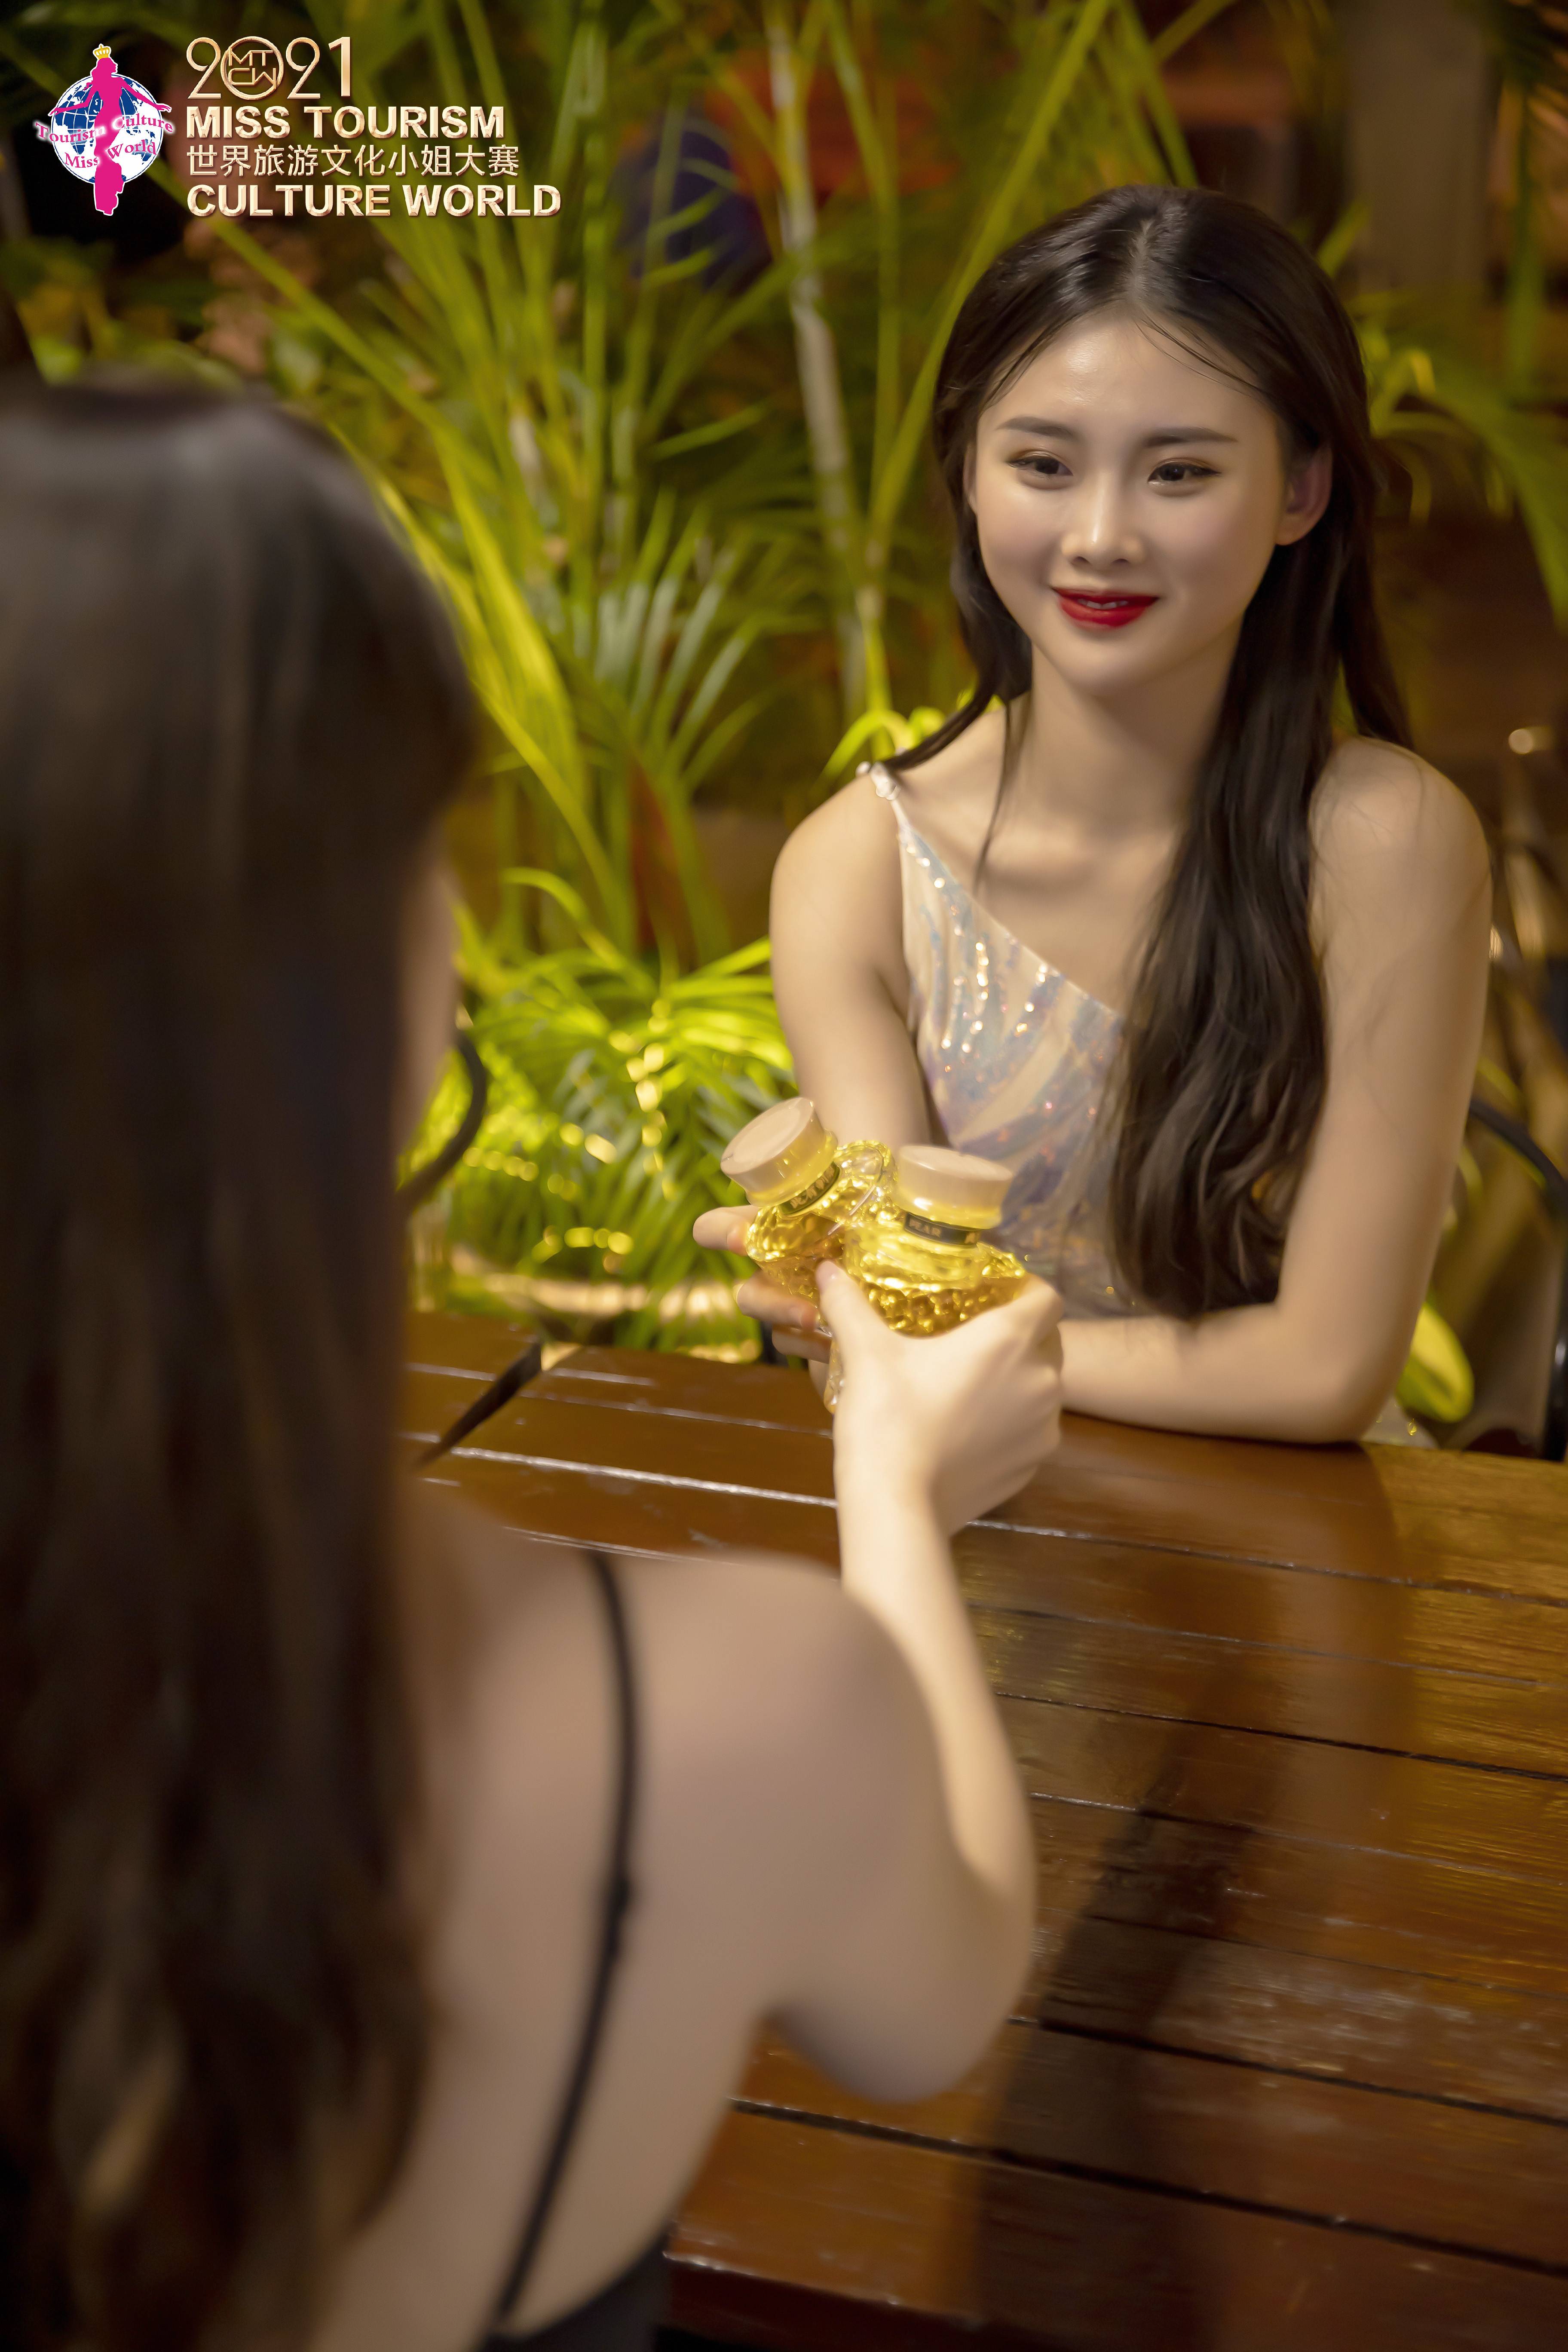 2021世界旅游文化小姐中国总决赛30强集训及主题大片全程曝光